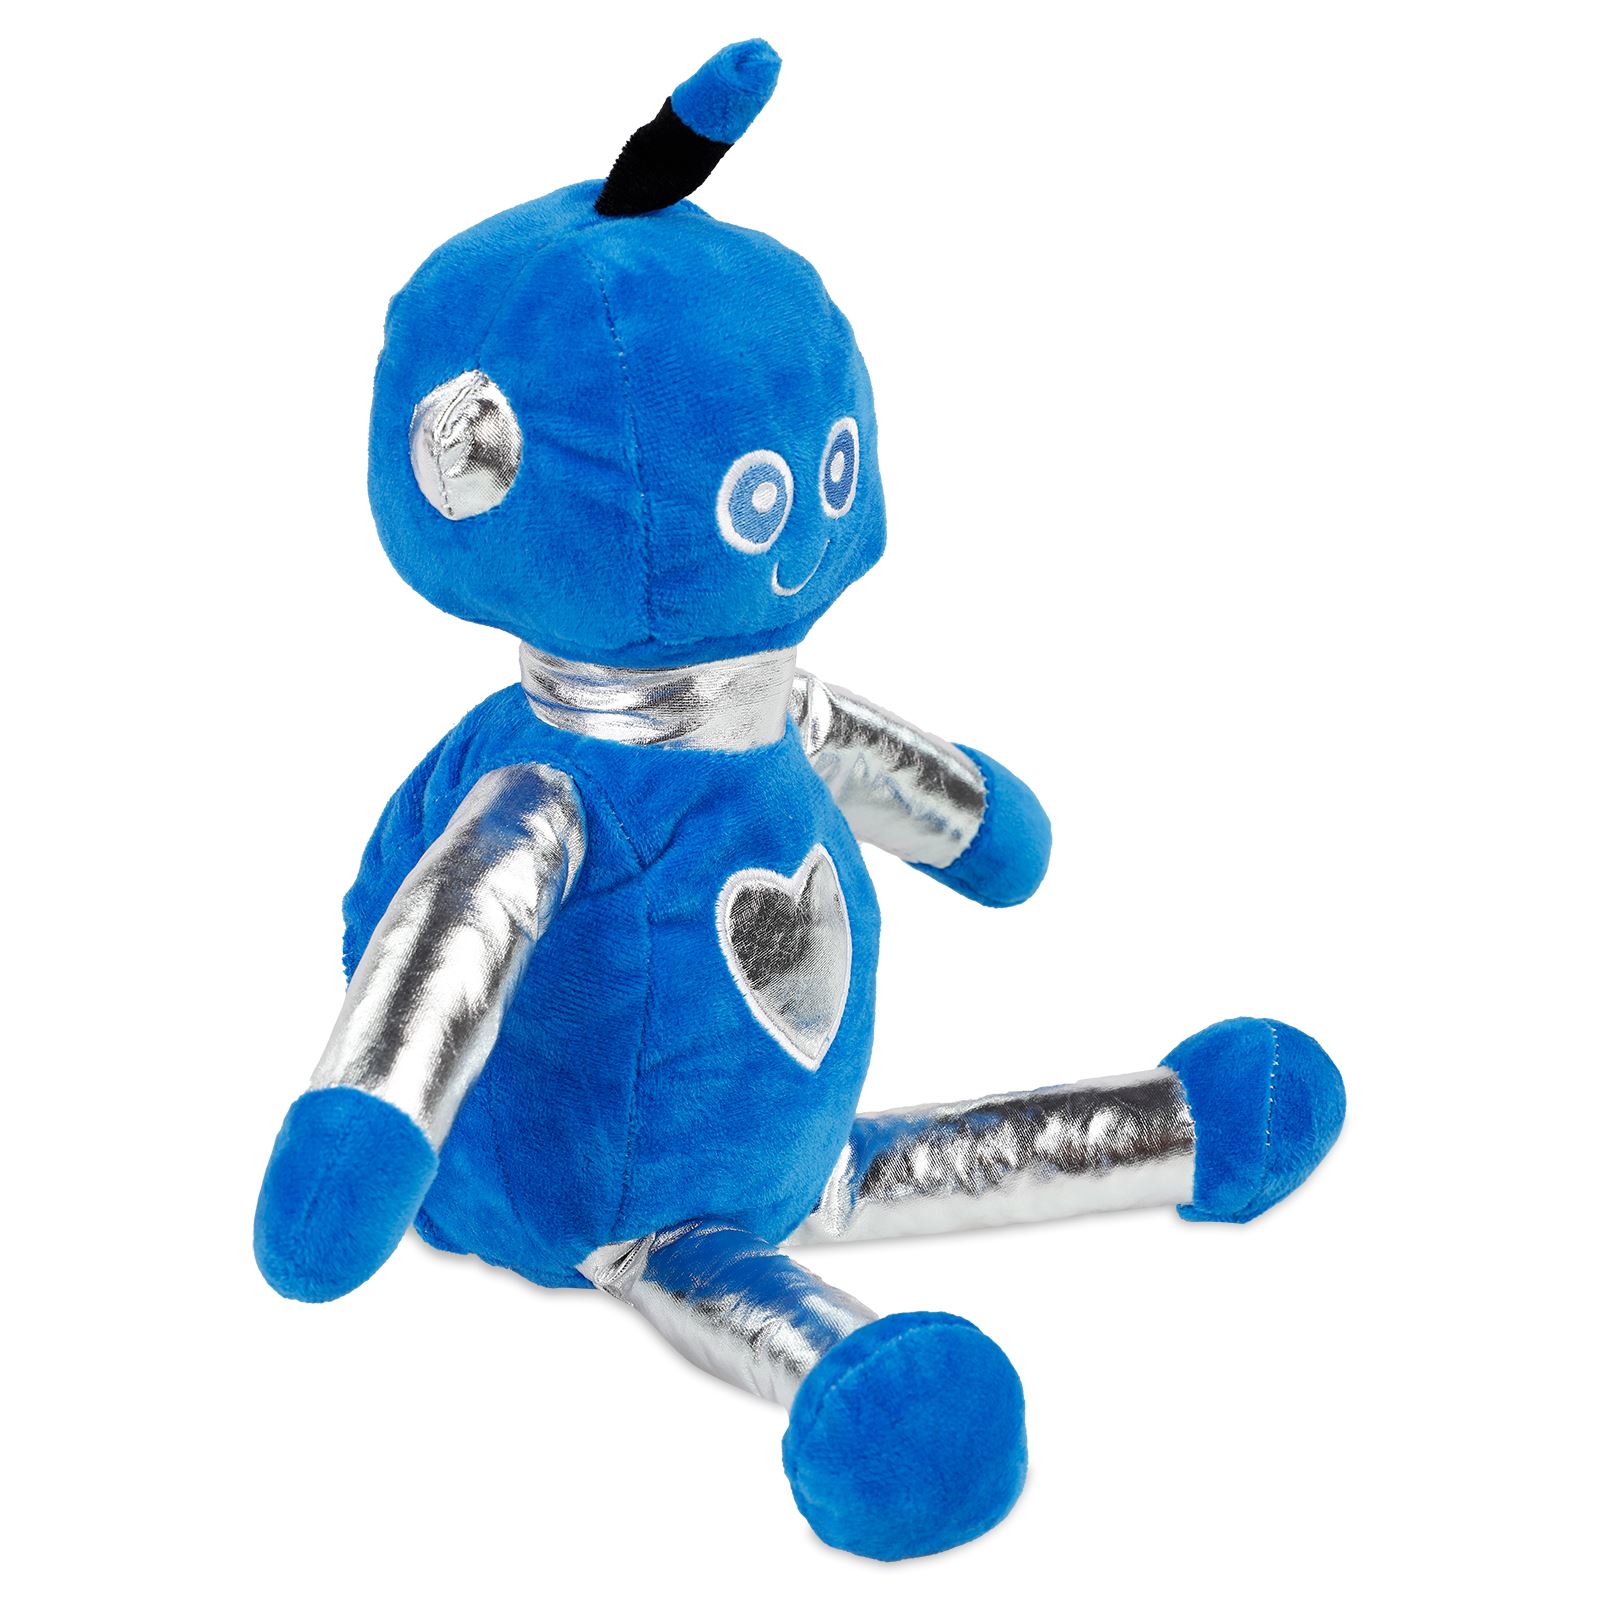 Halley Oyuncak Peluş Robotlar 35 cm Saks Mavisi